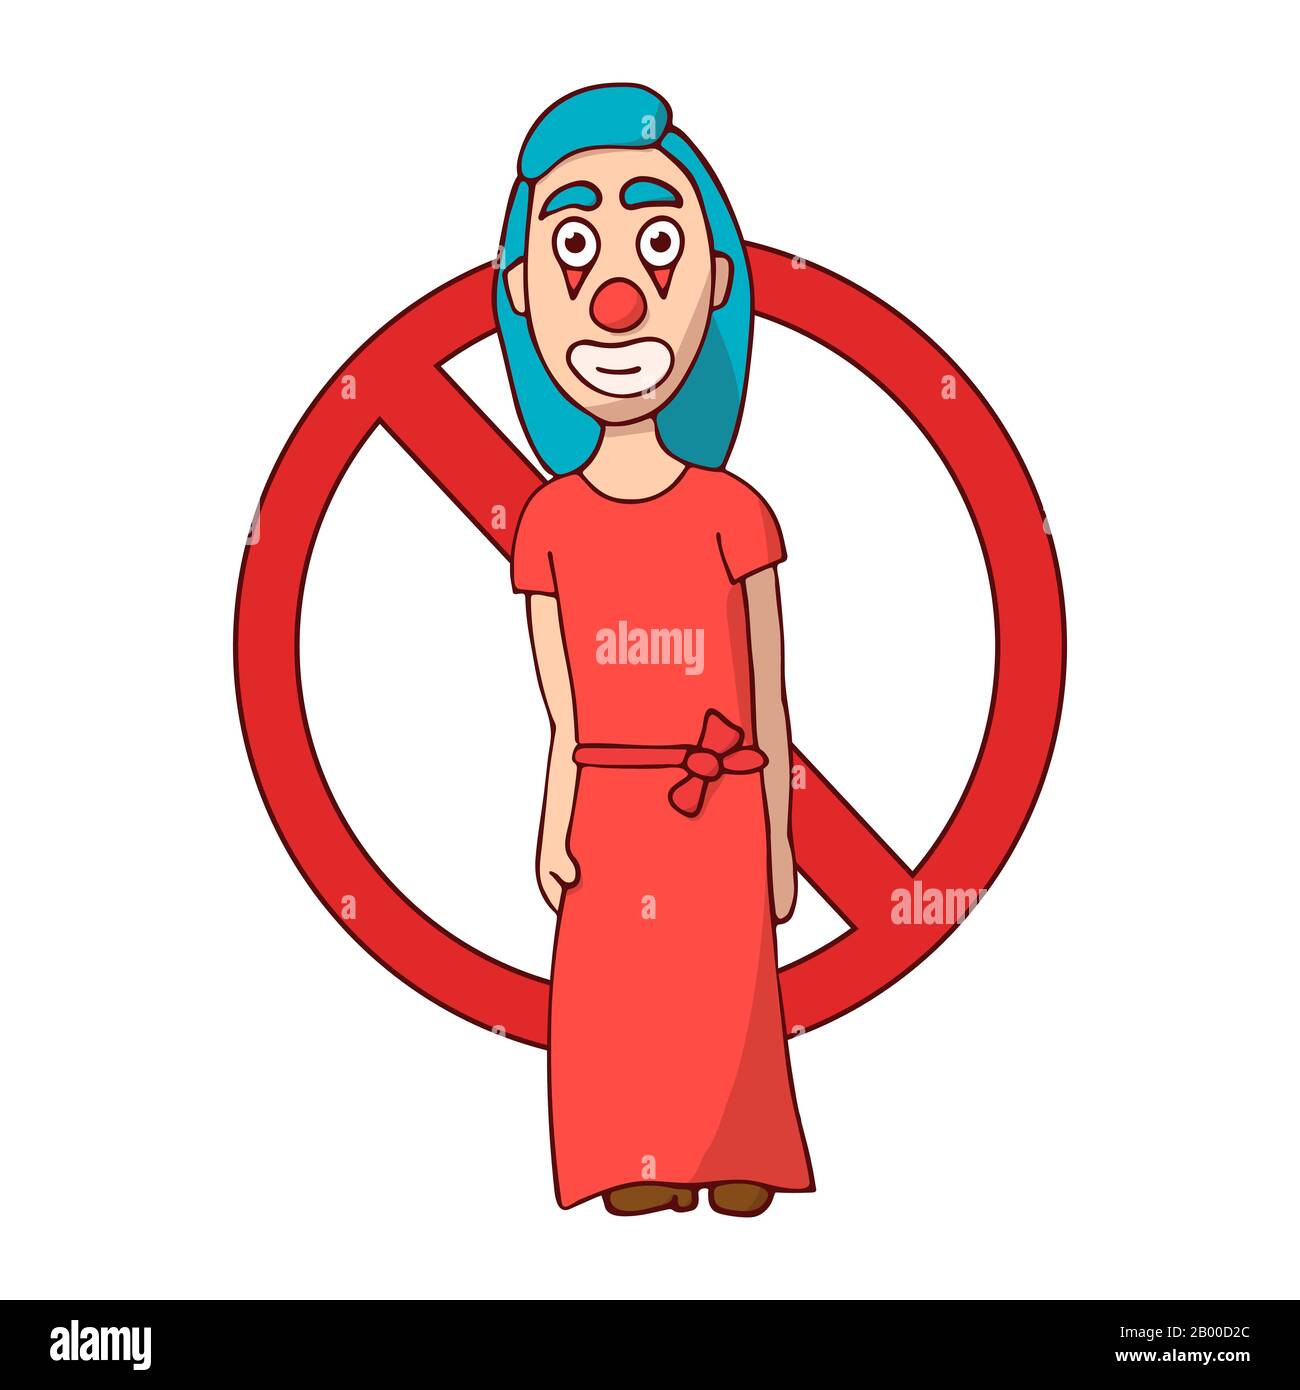 Ban Cartoon Woman clown in Dress. Kein Witz. Weißer Hintergrund isolierte Stock Vector Illustration Stock Vektor